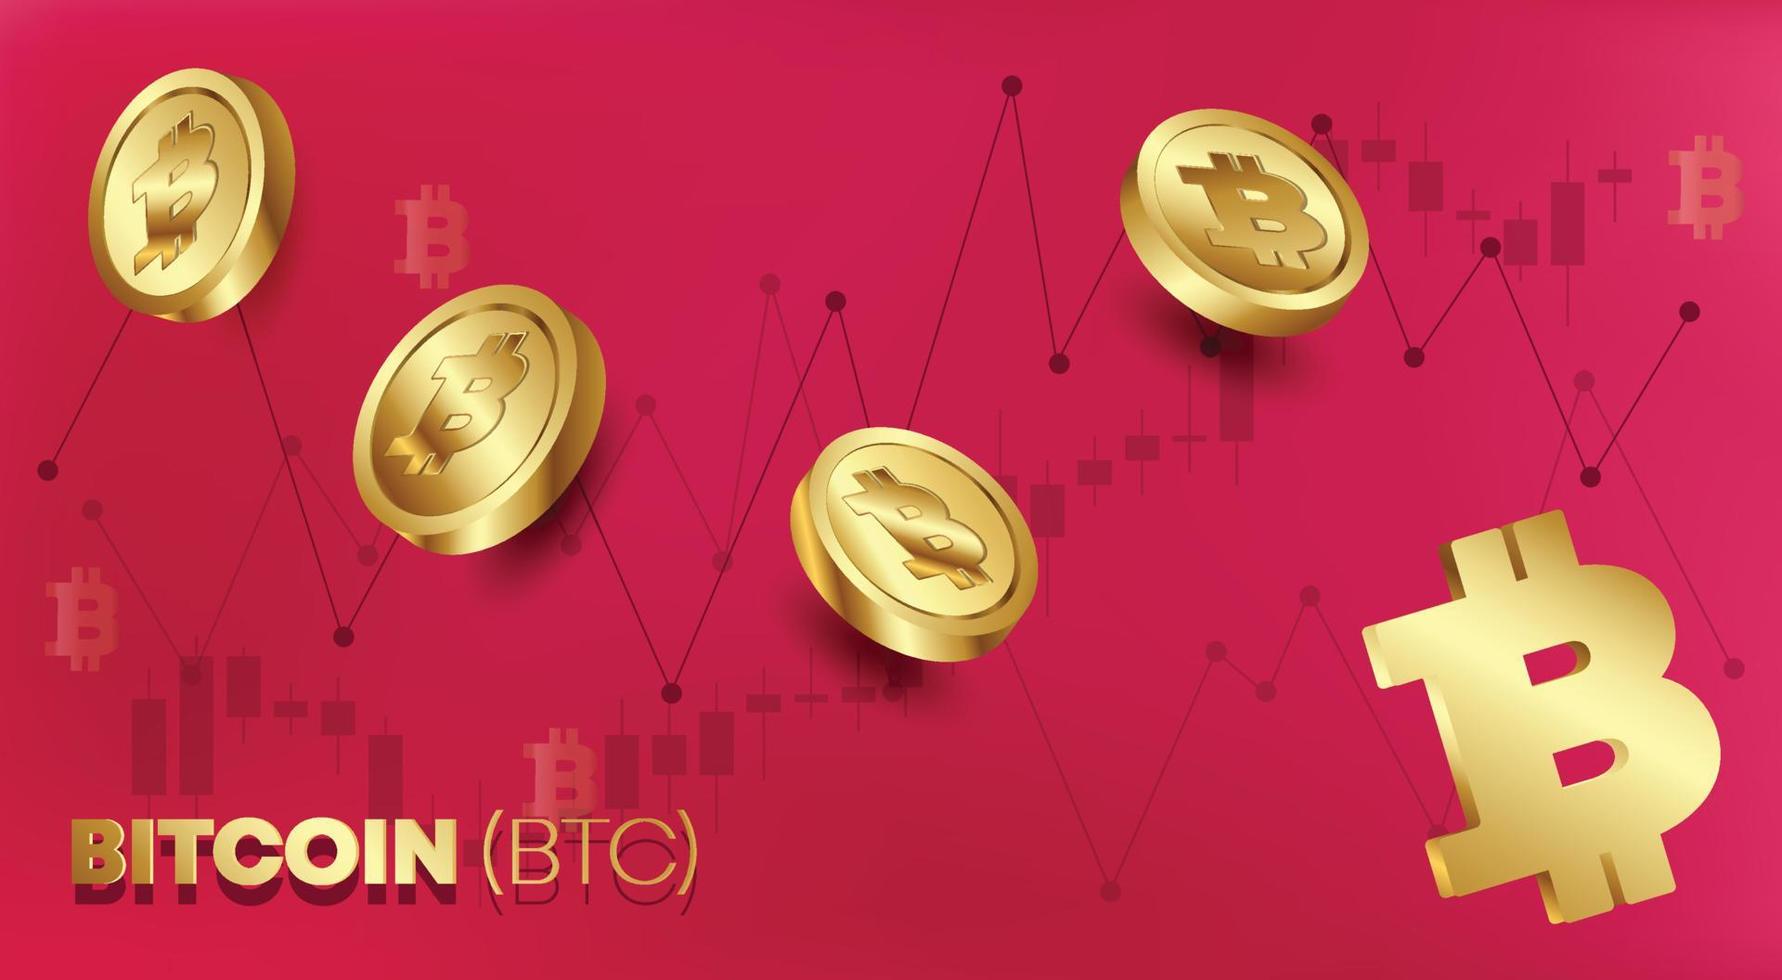 bitcoin btc monedas de oro con fondo de gráficos de mercado financiero ilustración vectorial libre vector